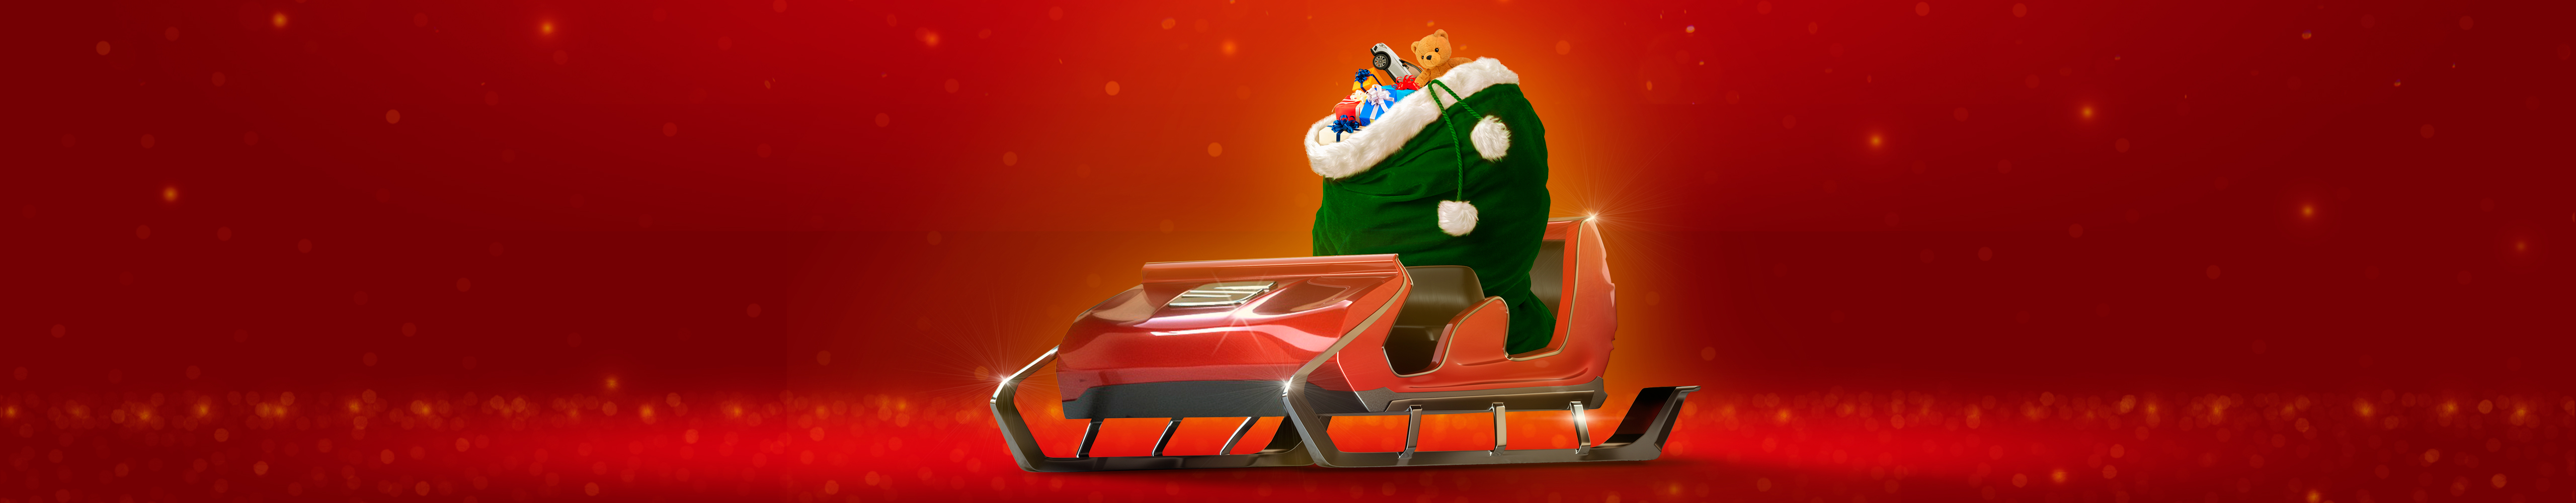 Trineo SEAT de Santa, exclusivo para Santa